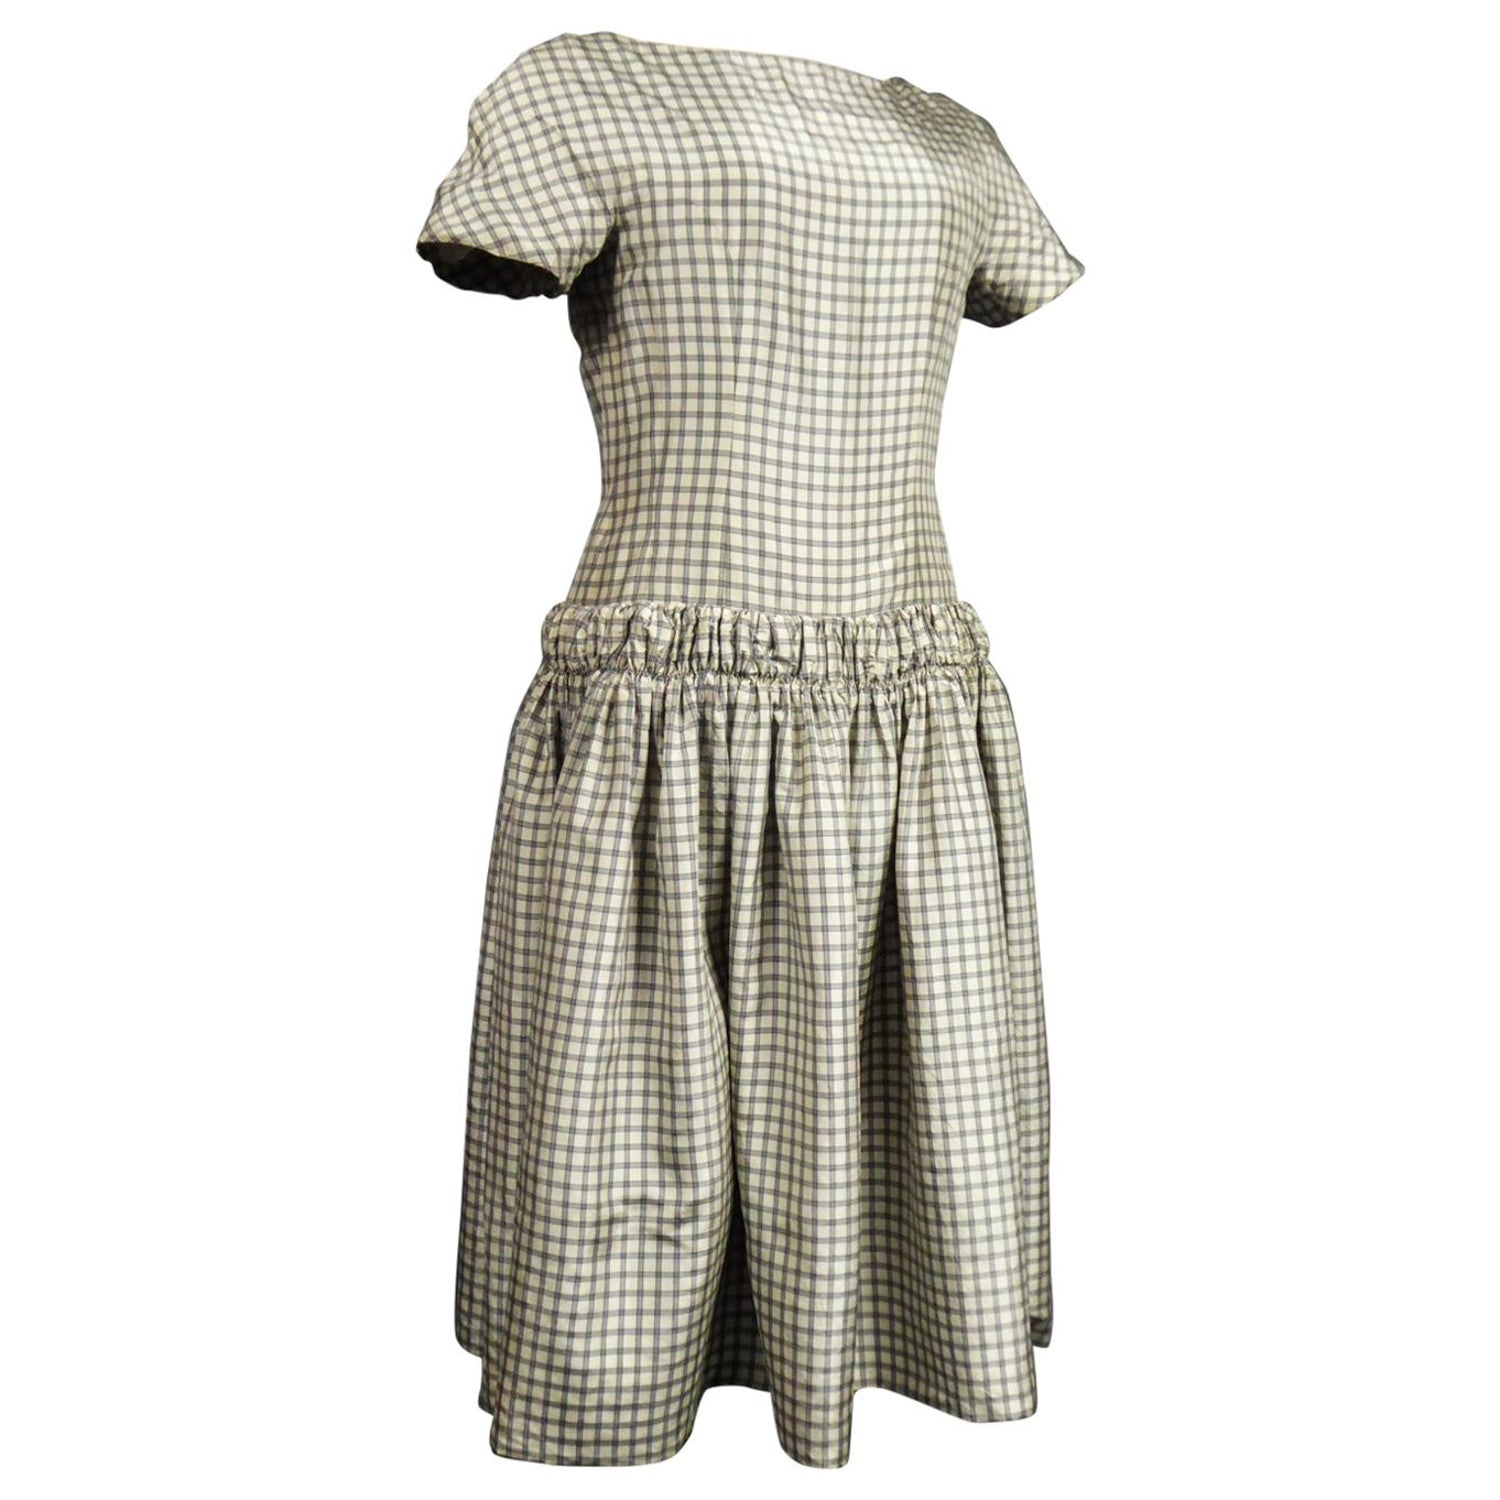 A Cristobal Balenciaga Couture Sac Dress in Plaid Taffeta n°55418 Circa  1958 at 1stDibs | sac suit